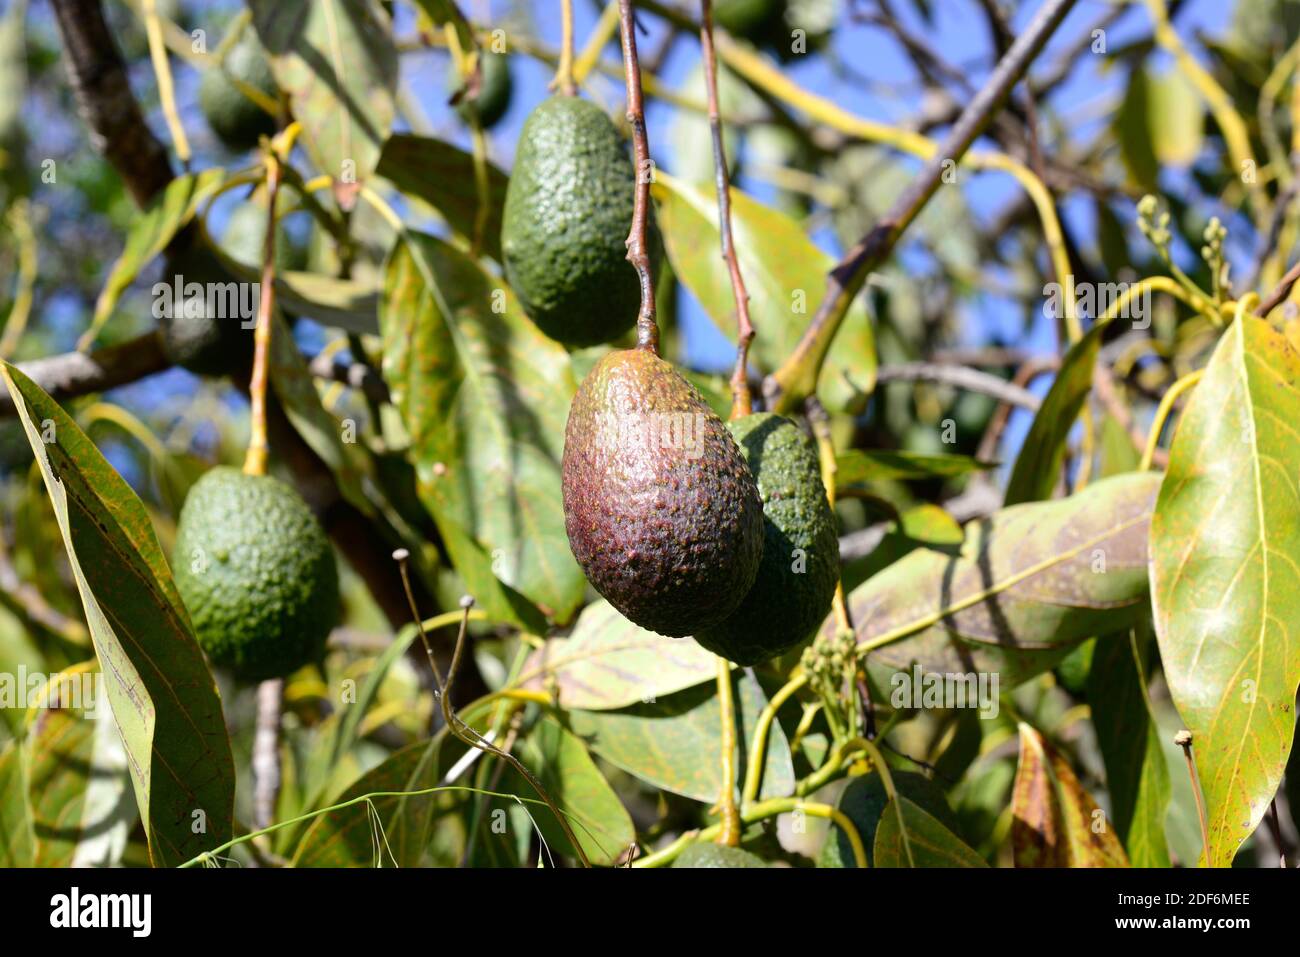 El aguacate (Persea americana) es un árbol perenne nativo del sur de México. Sus frutos (bayas) son comestibles. Detalle de frutas. Foto de stock